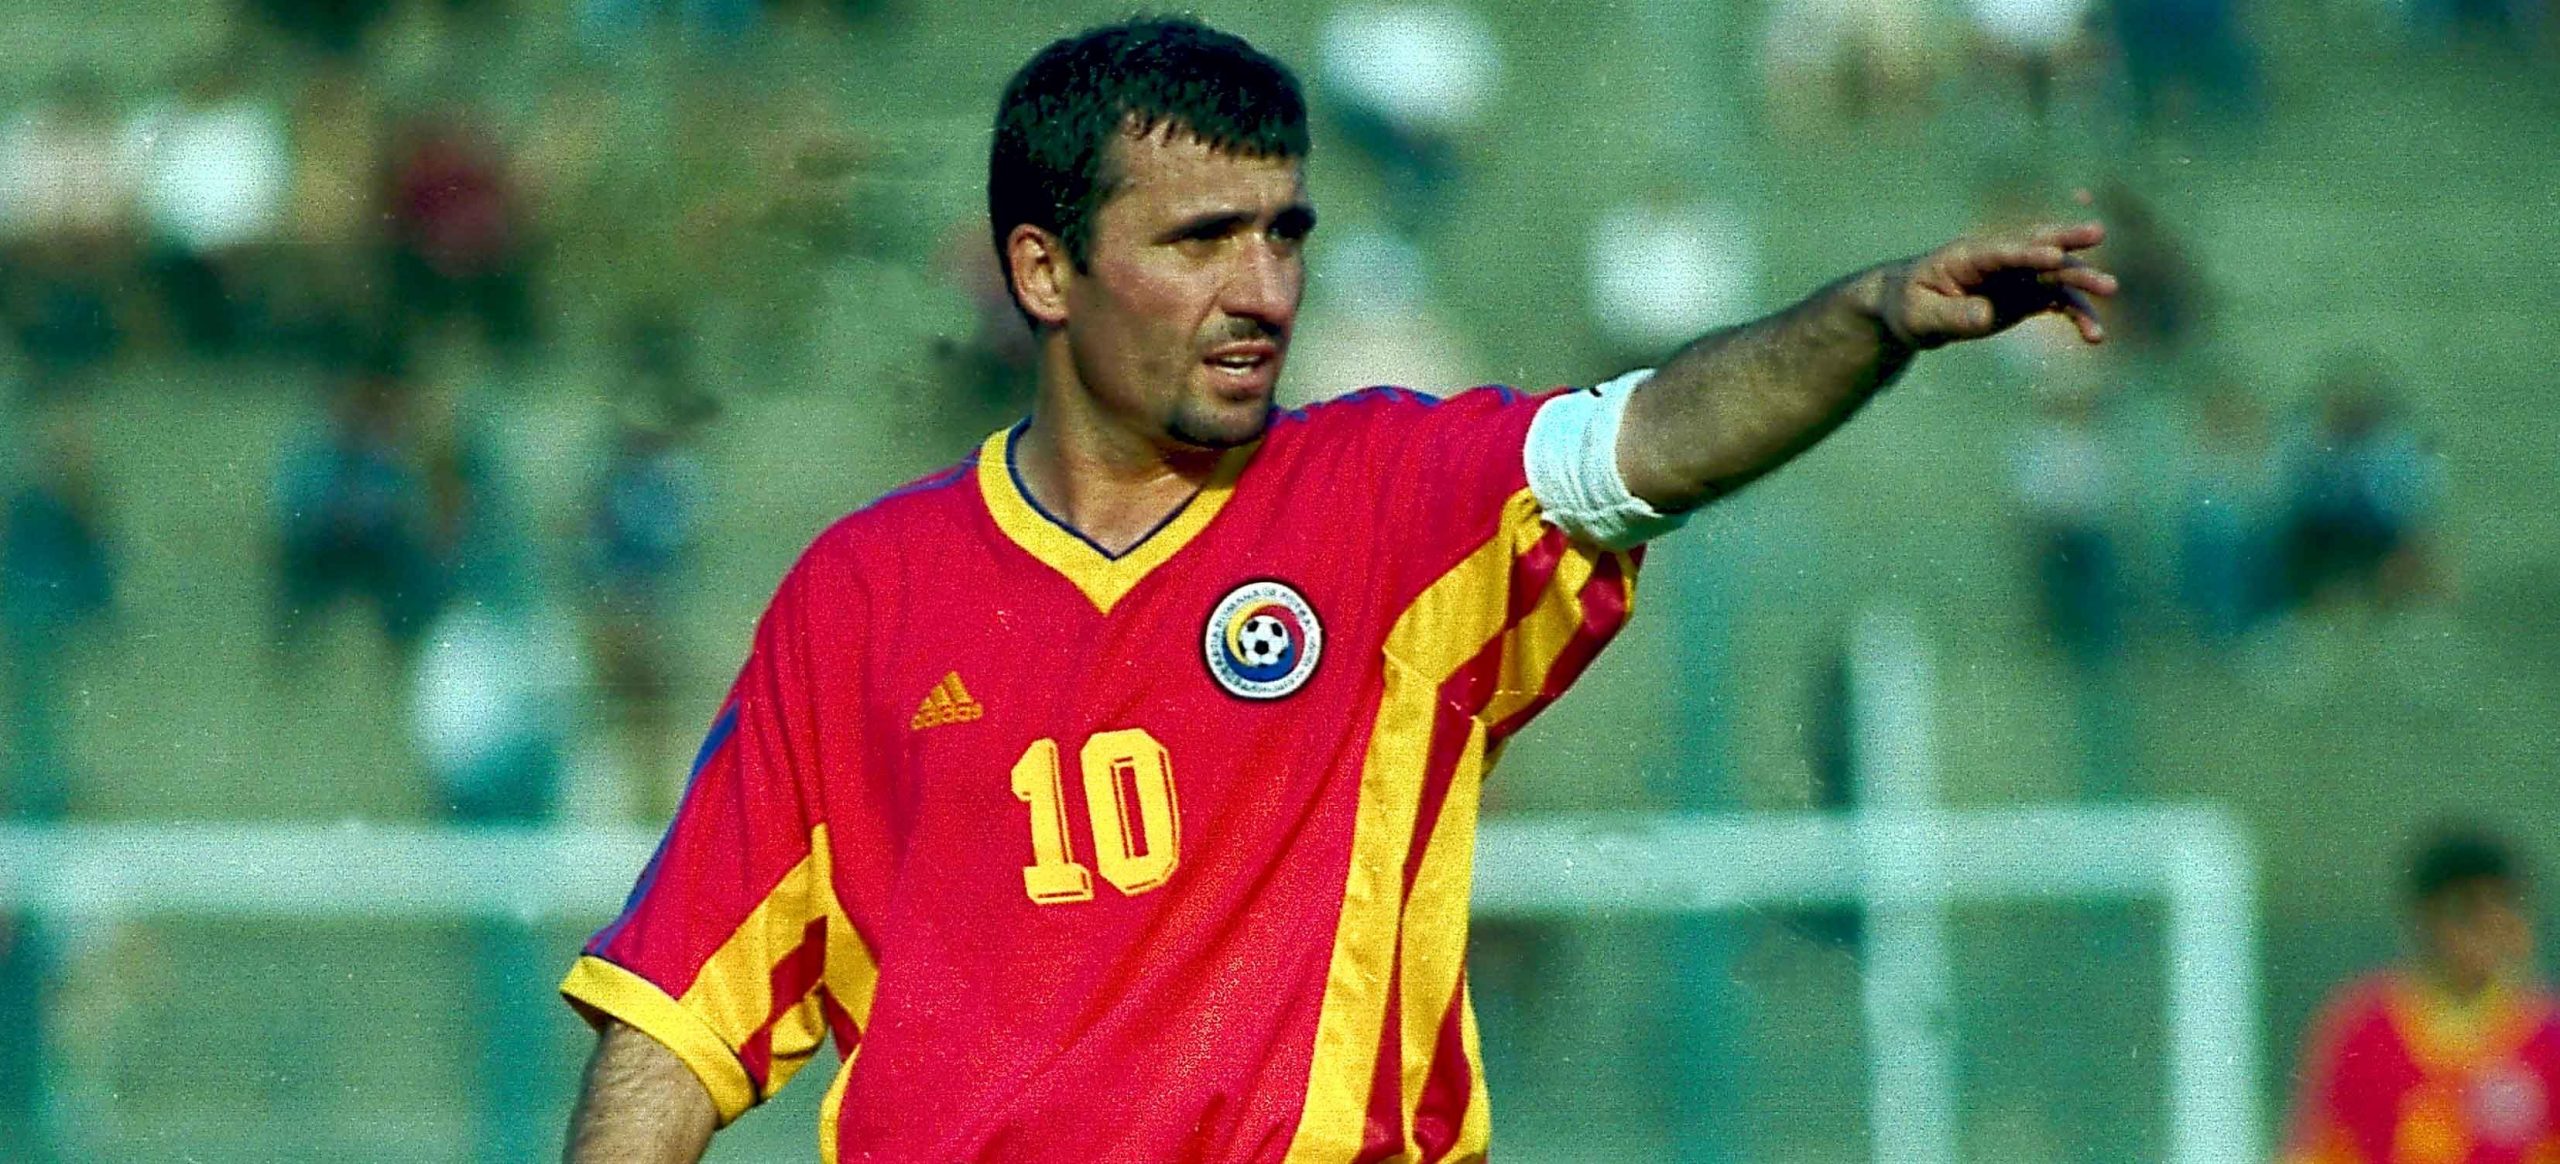 „Regele fotbalului românesc”, Gică Hagi, în top 100 al celor mai buni jucători din istorie!